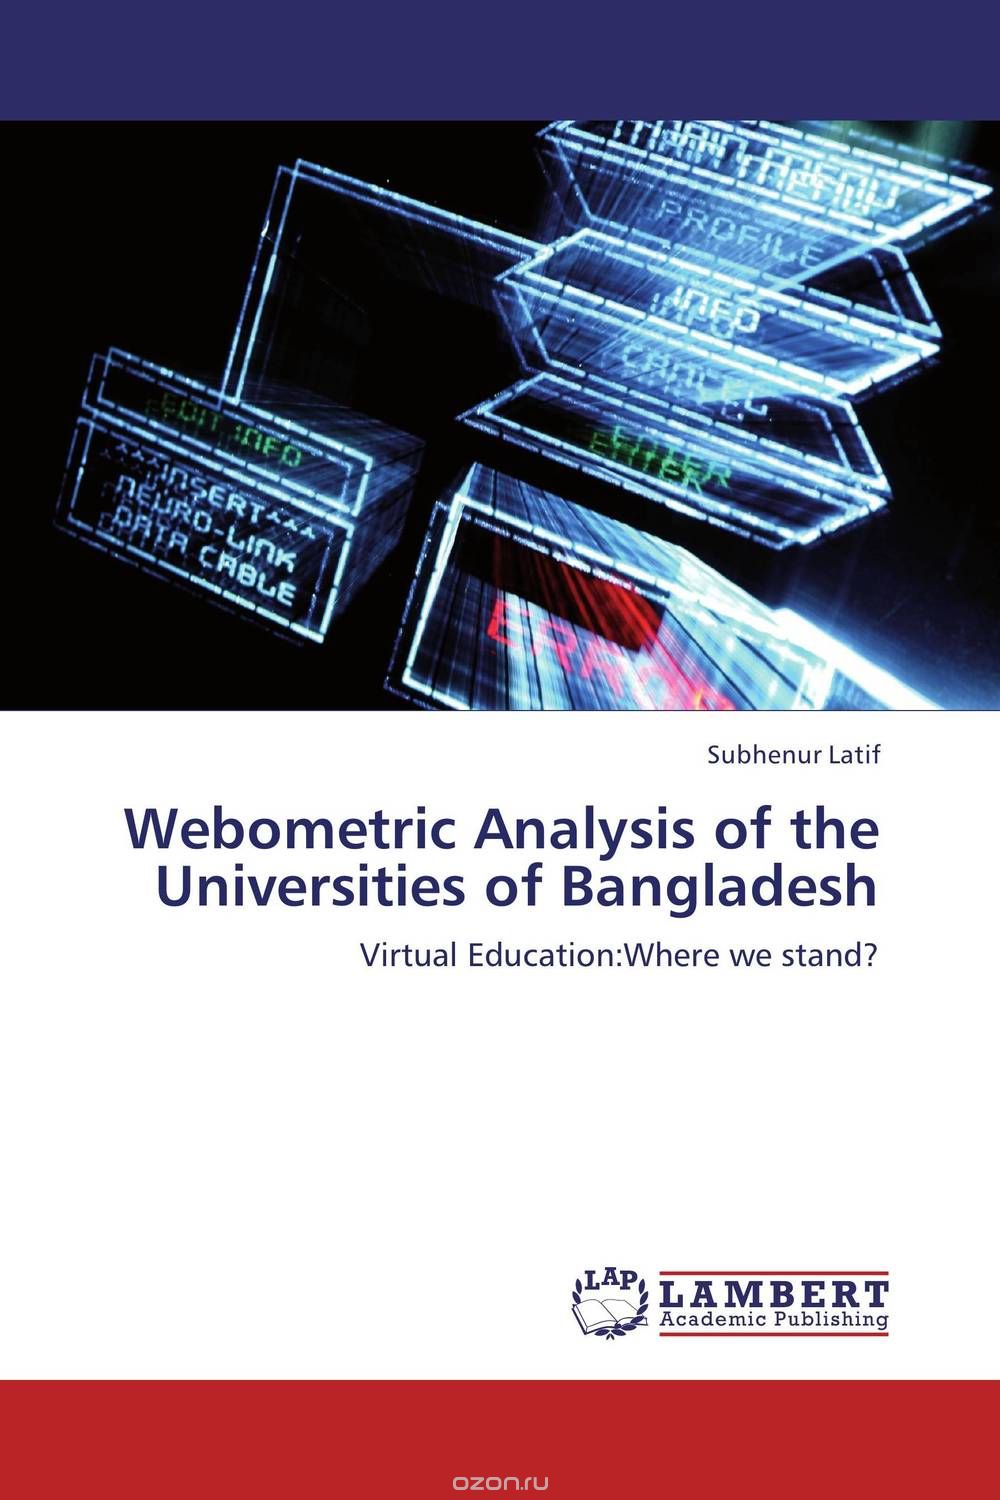 Скачать книгу "Webometric Analysis of the Universities of Bangladesh"